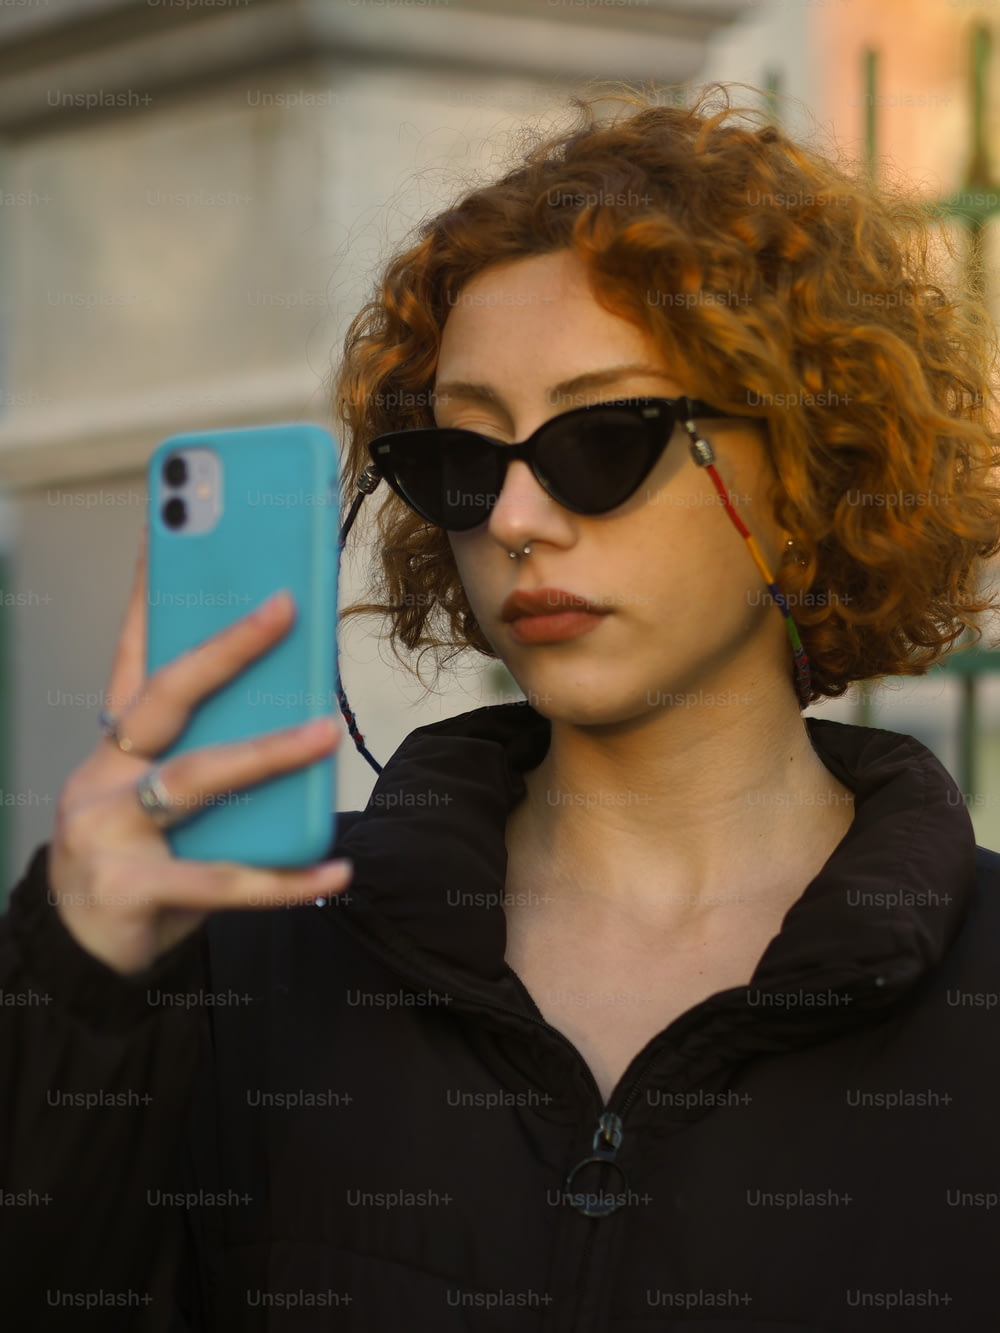 빨간 머리와 선글라스를 쓴 여자가 휴대폰을 들고 있다